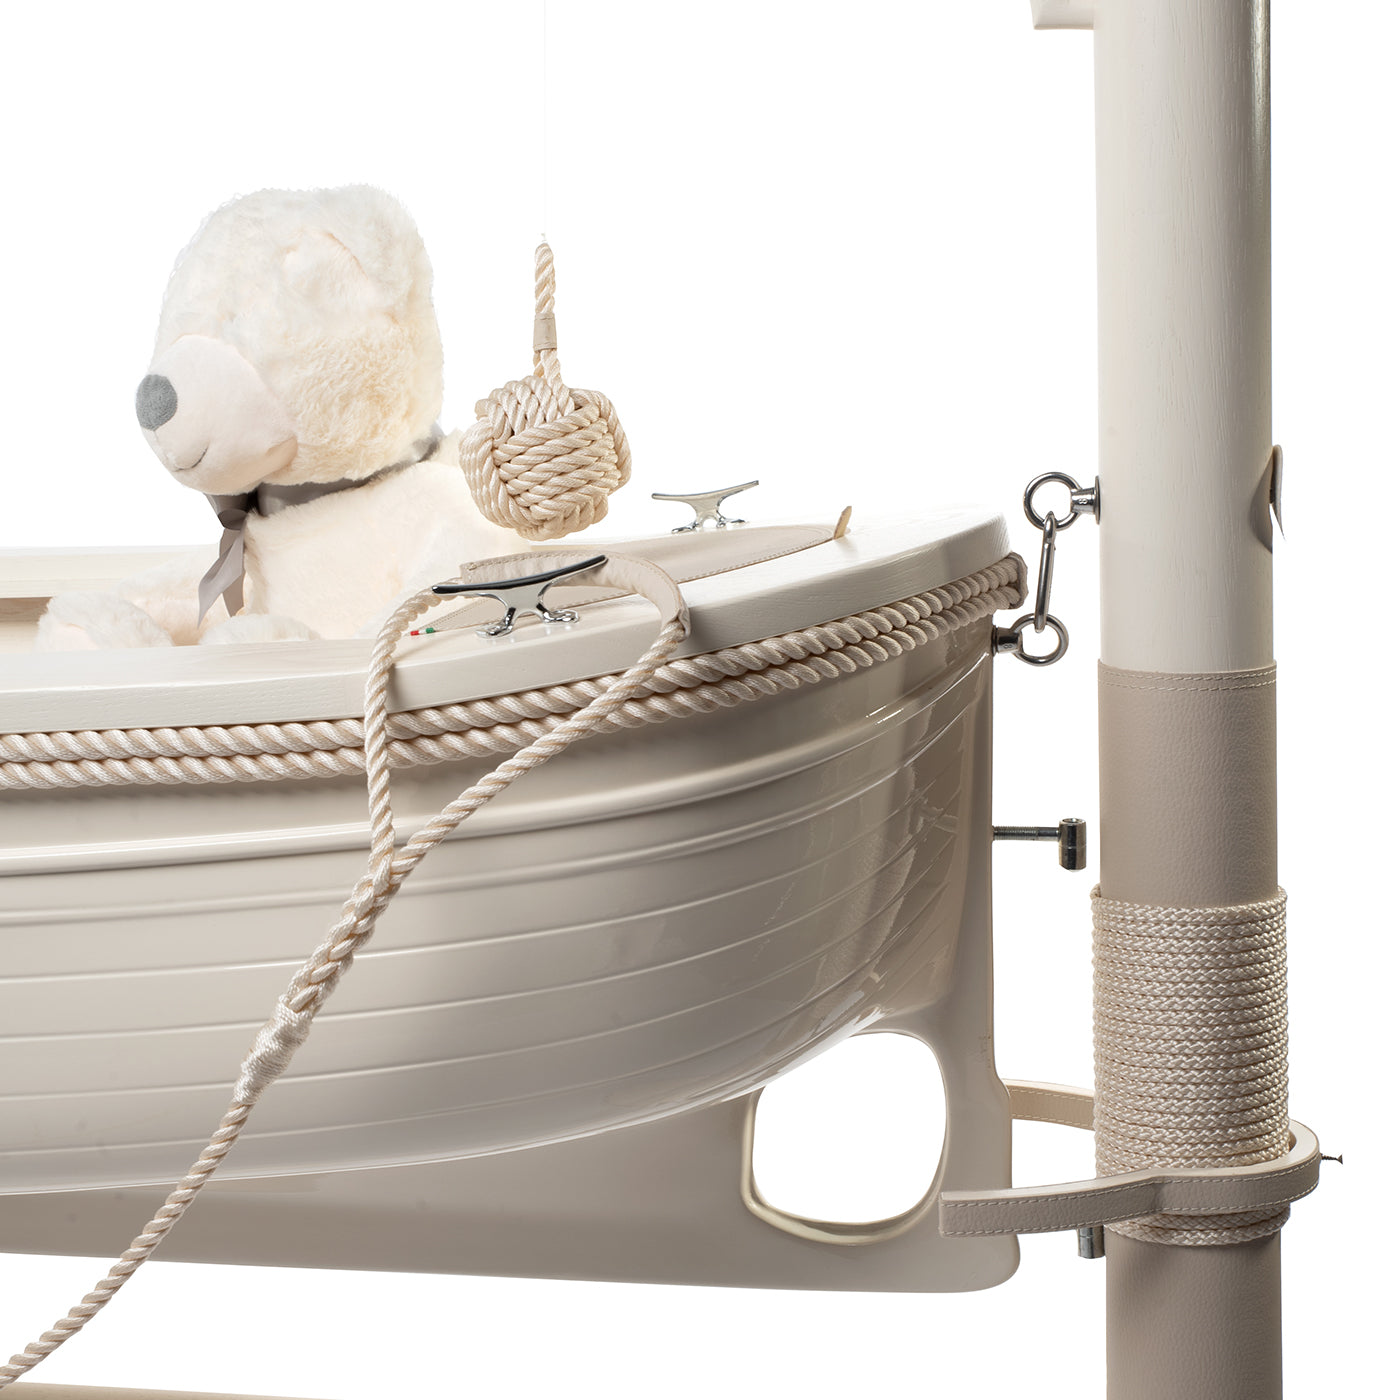 La Barchetta Boat-Shaped White Cradle/Writing Desk - Alternative view 1